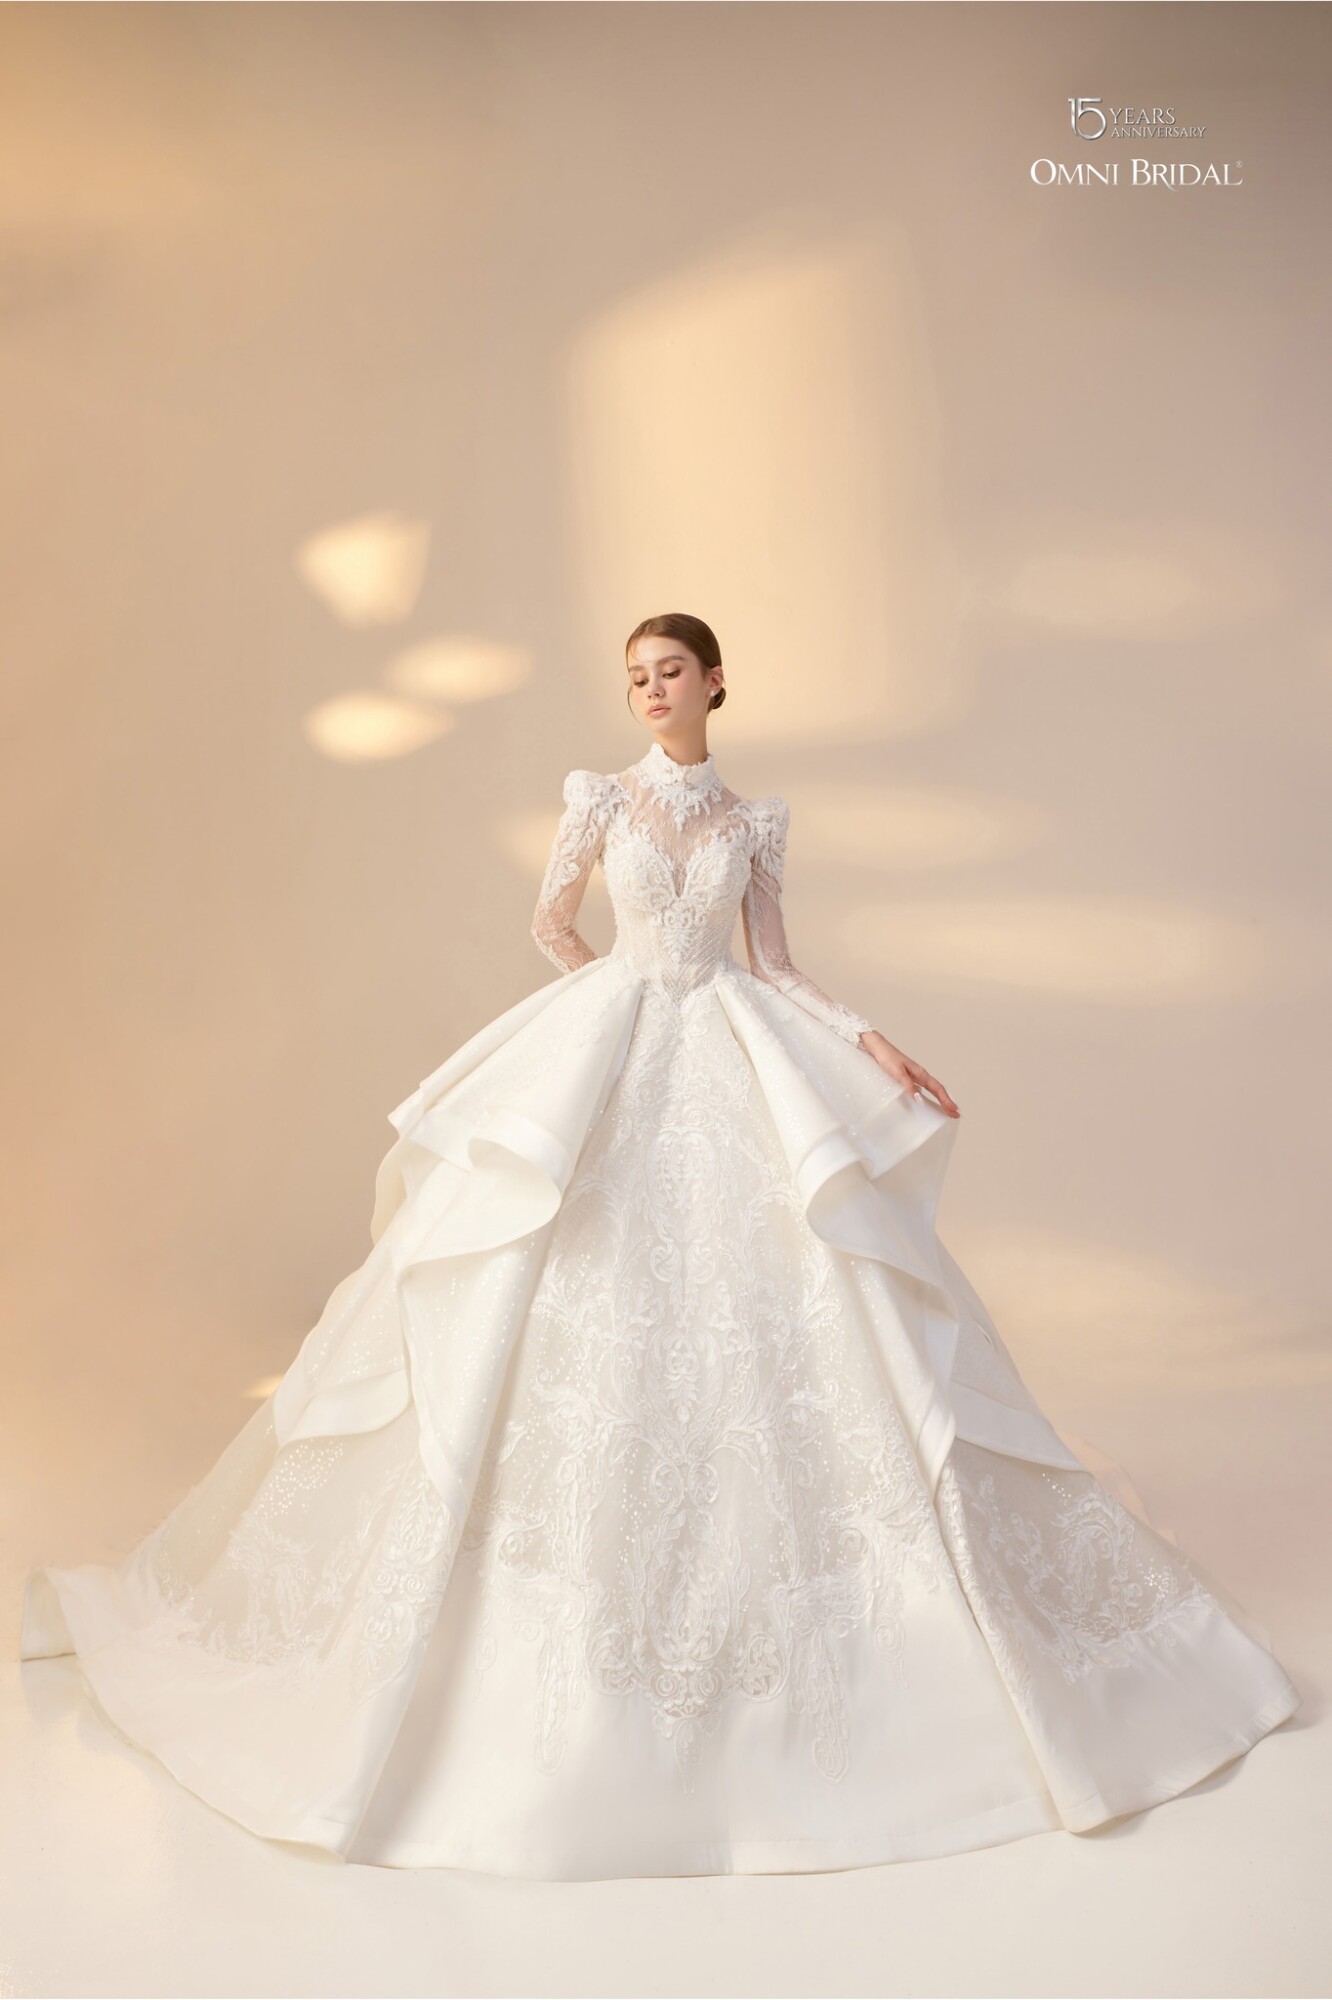 Bộ sưu tập váy cưới đẹp sang trọng tại Omni Bridal - Omni Bridal- Đơn vị cung cấp dịch vụ cưới trọn gói chuyên nghiệp và uy tín.